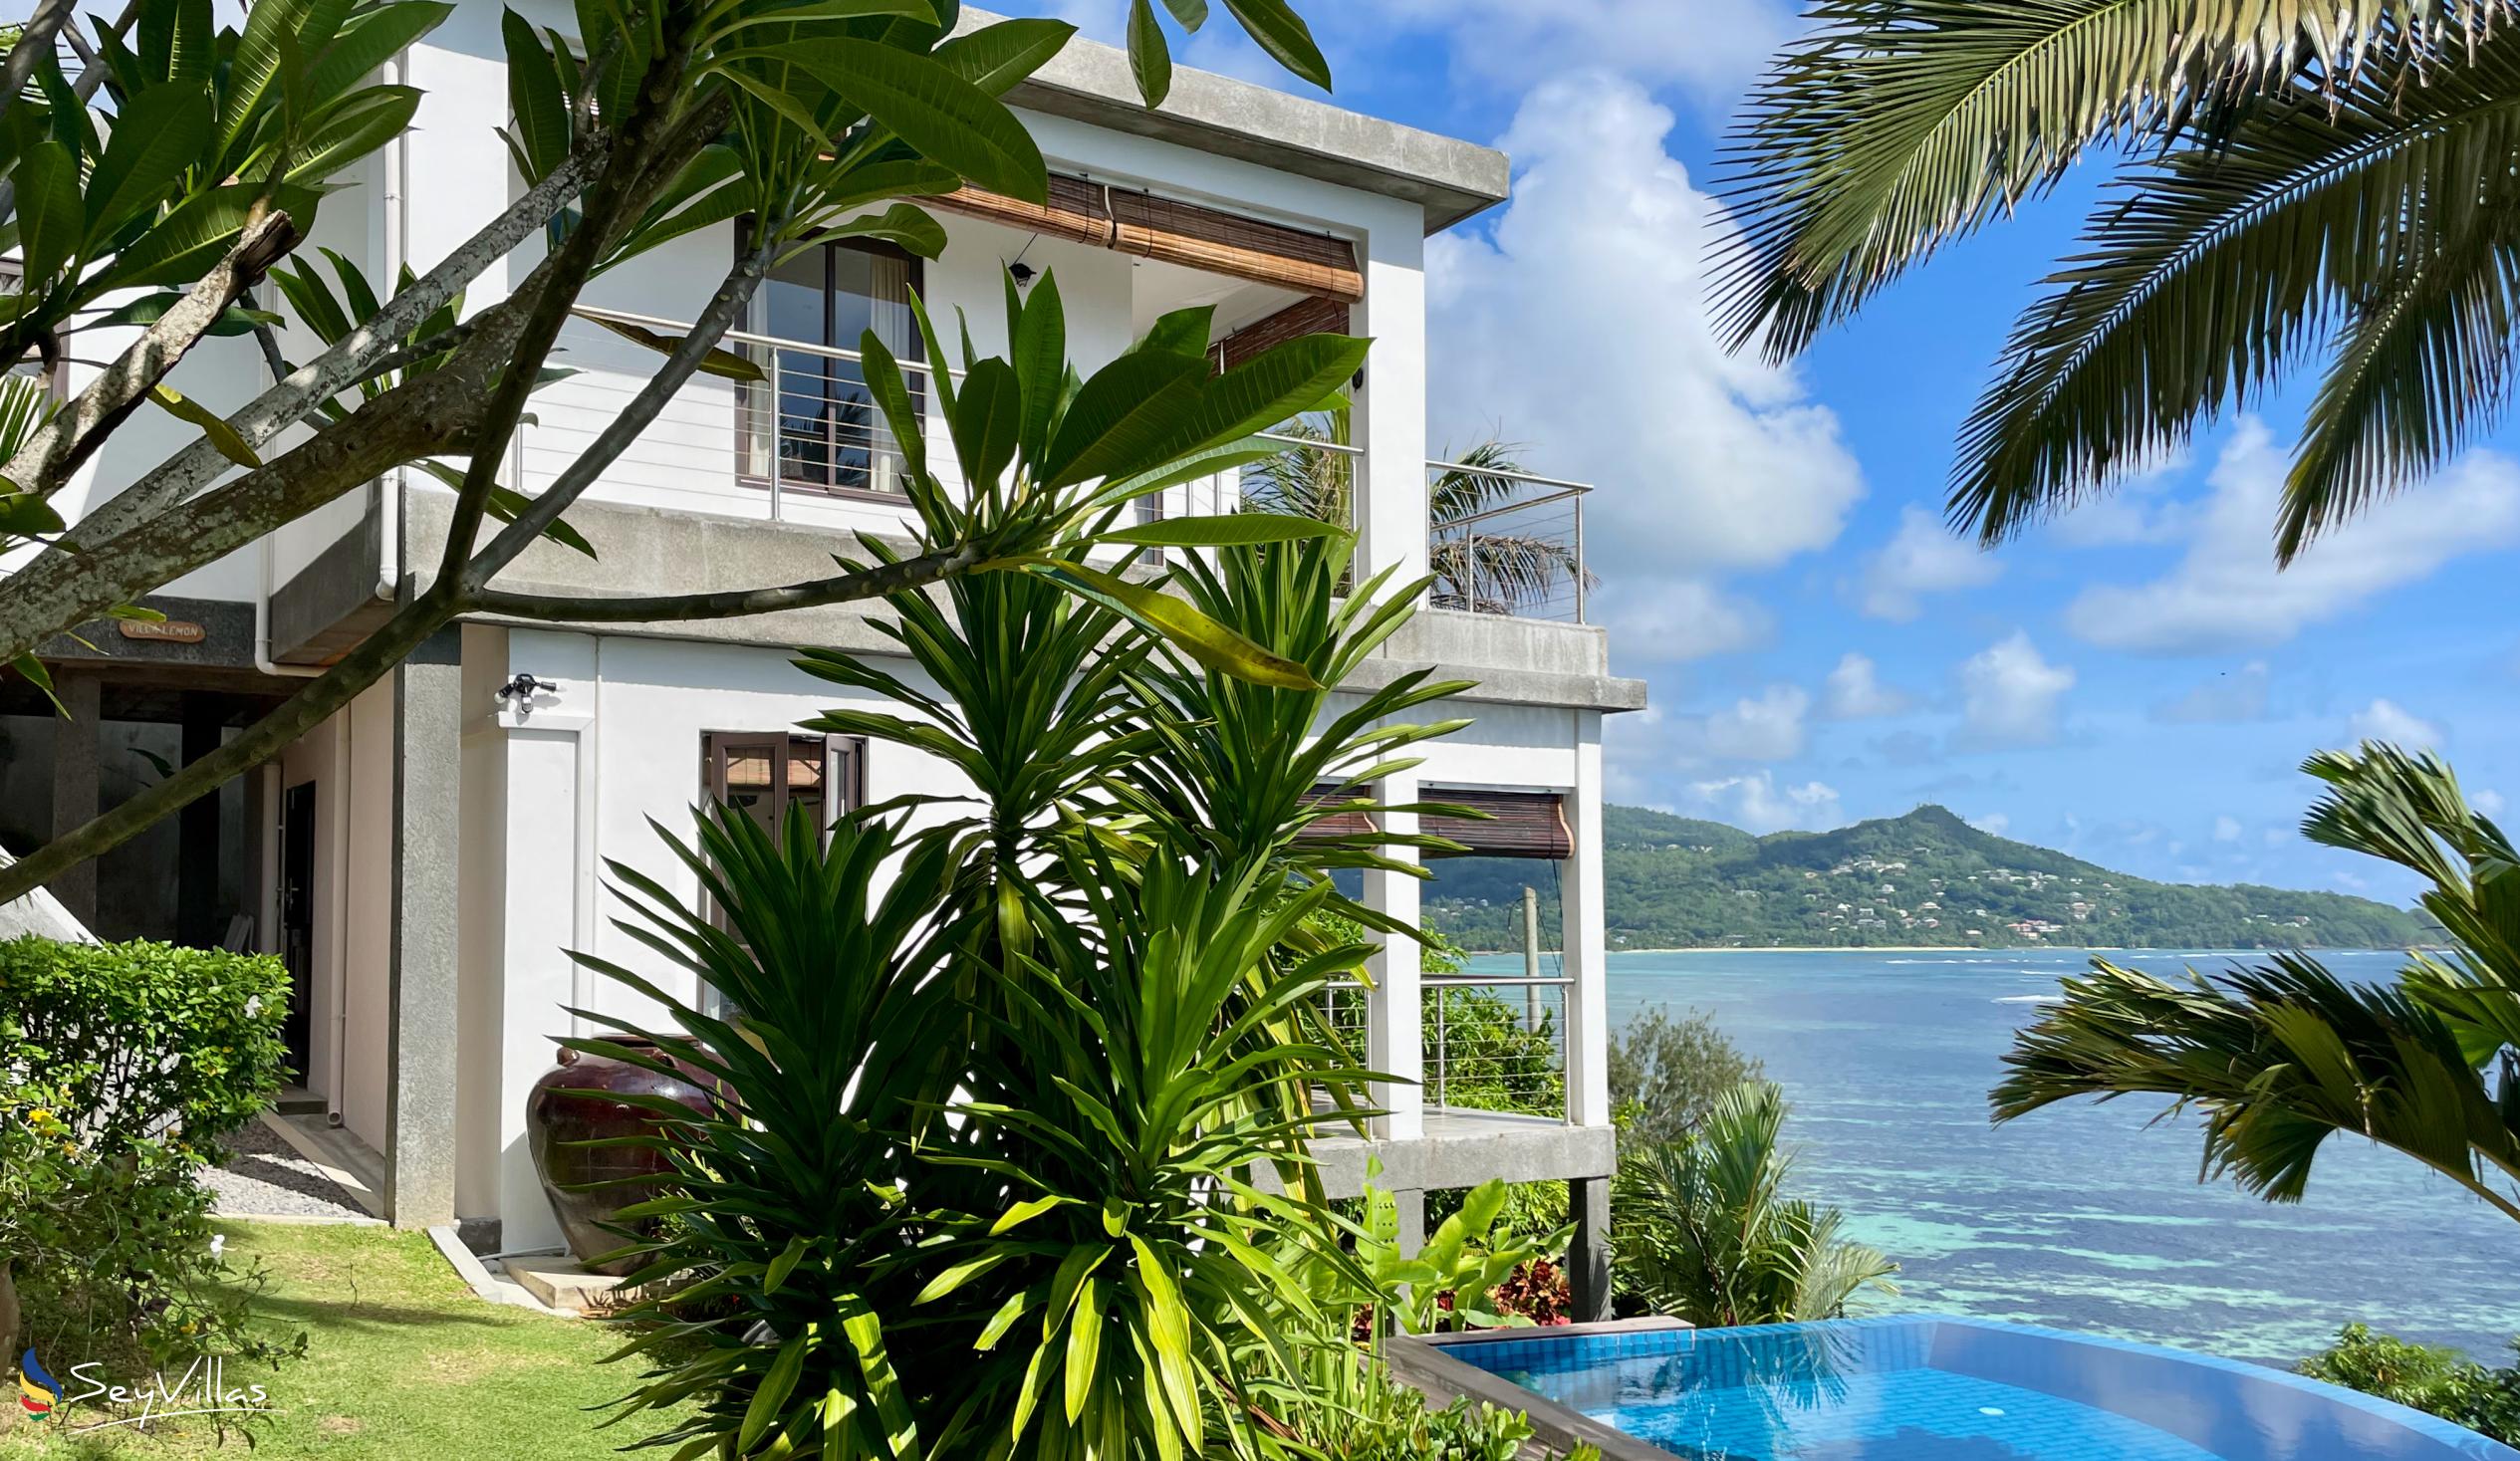 Photo 127: Chalets Bougainville - Upper Floor Apartment Villa Lemon - Mahé (Seychelles)